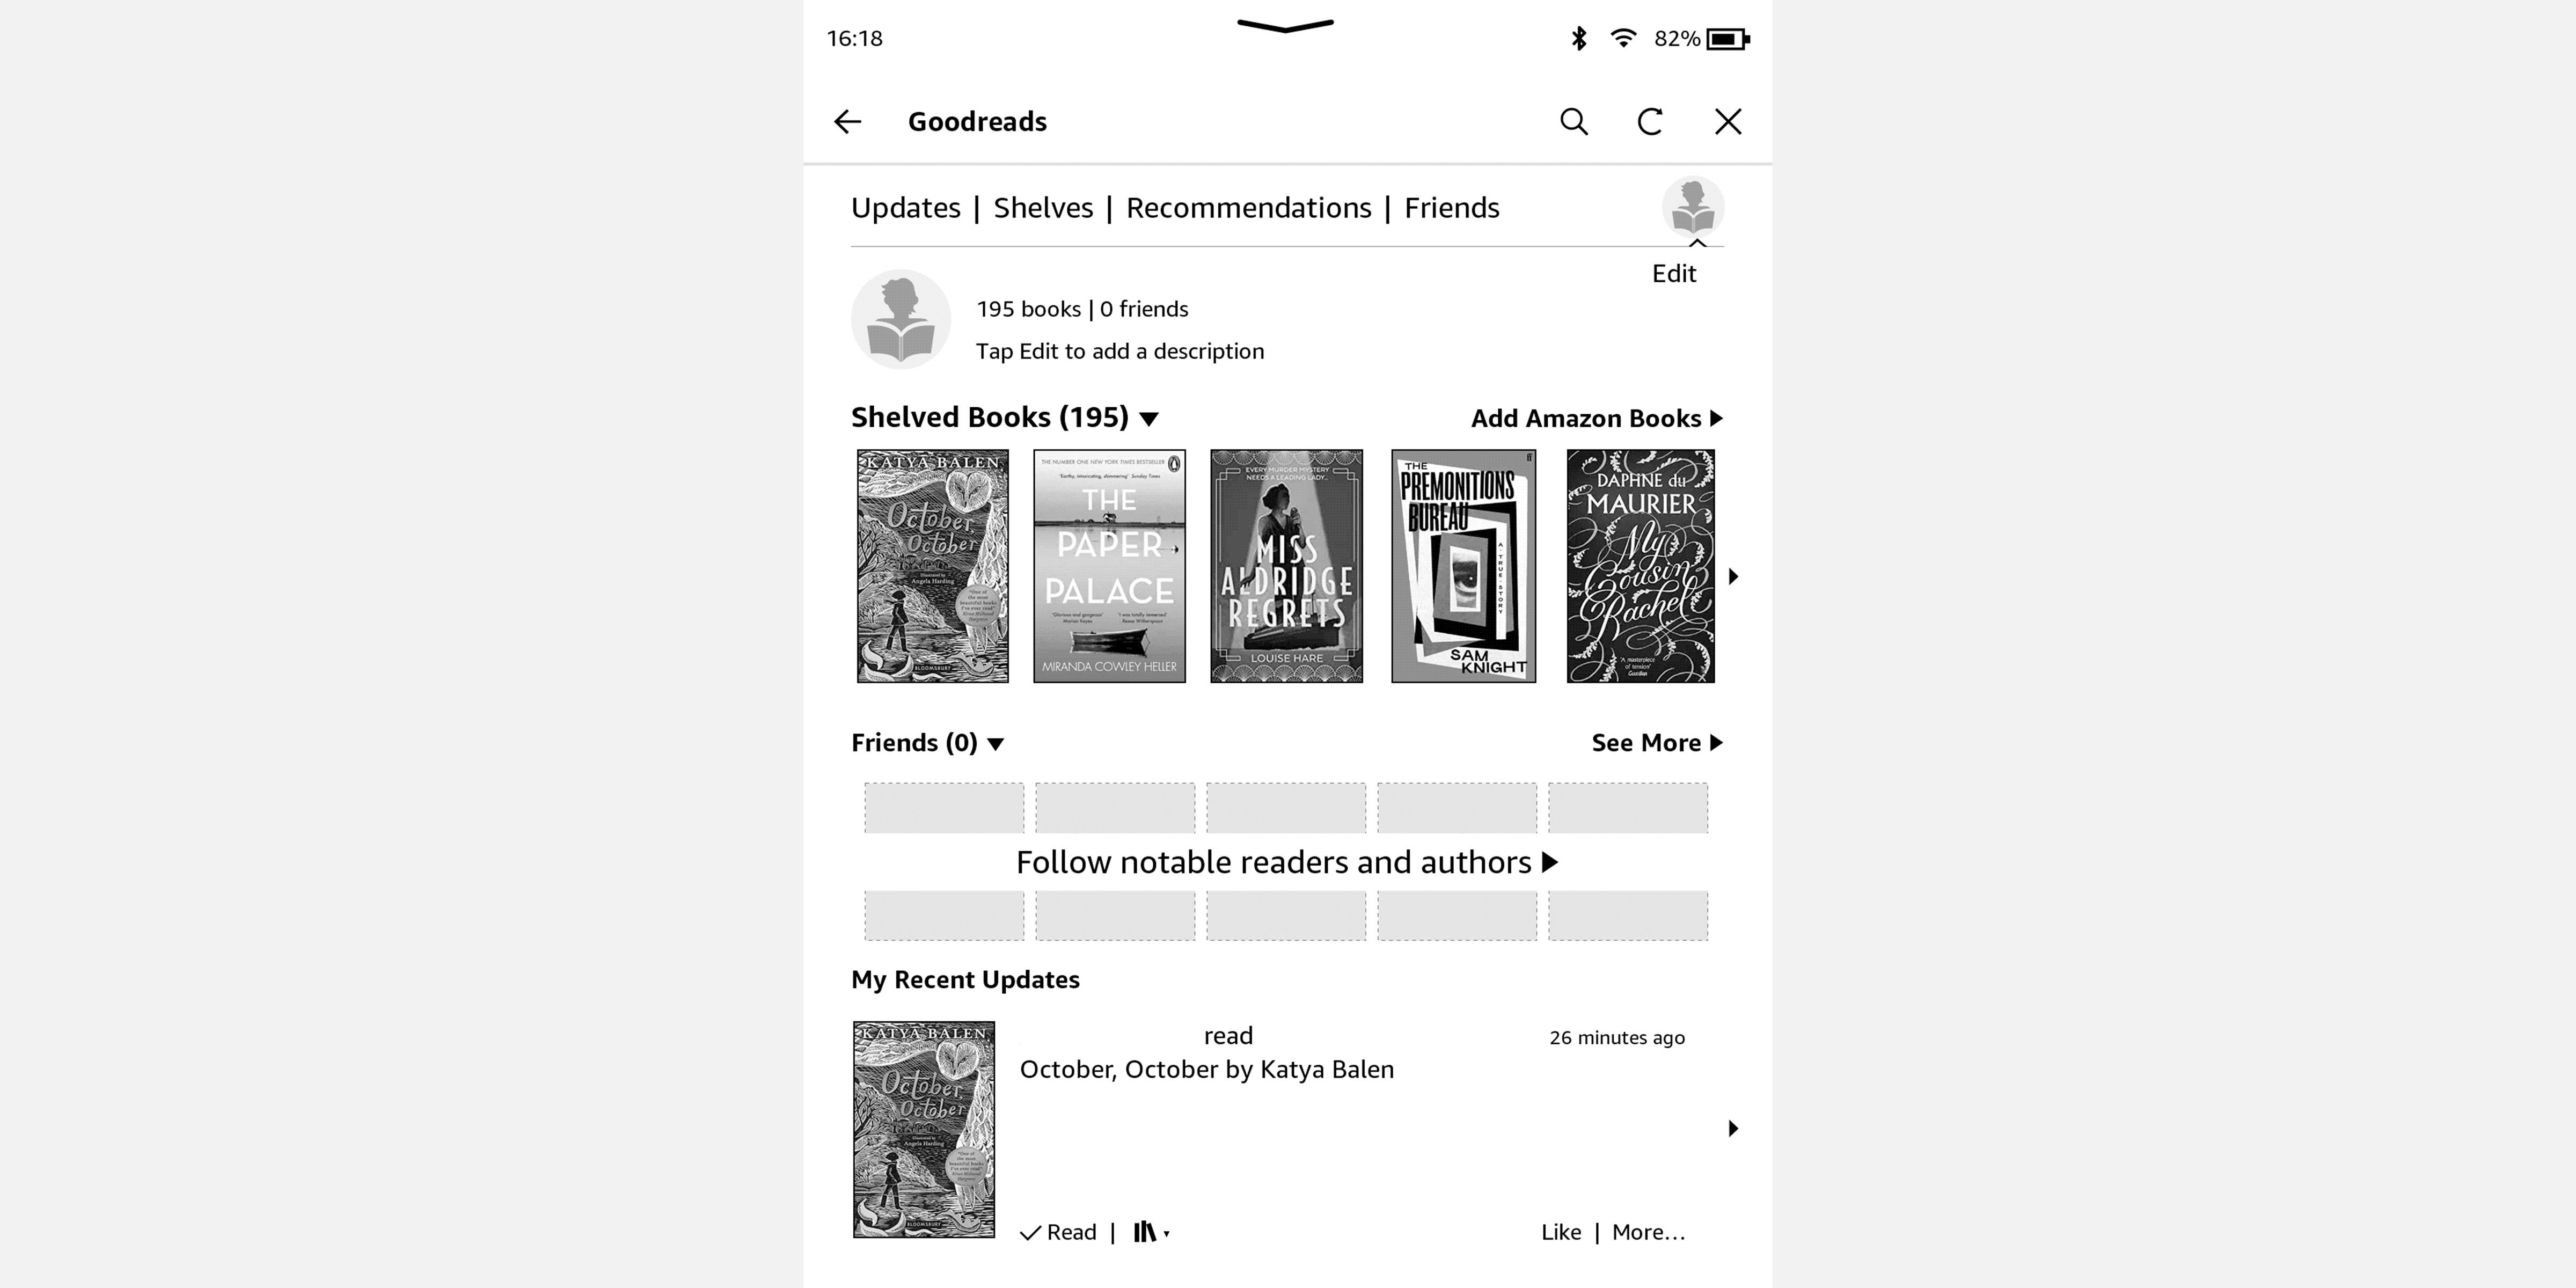 Screenshot of Amazon Kindle showing goodreads display